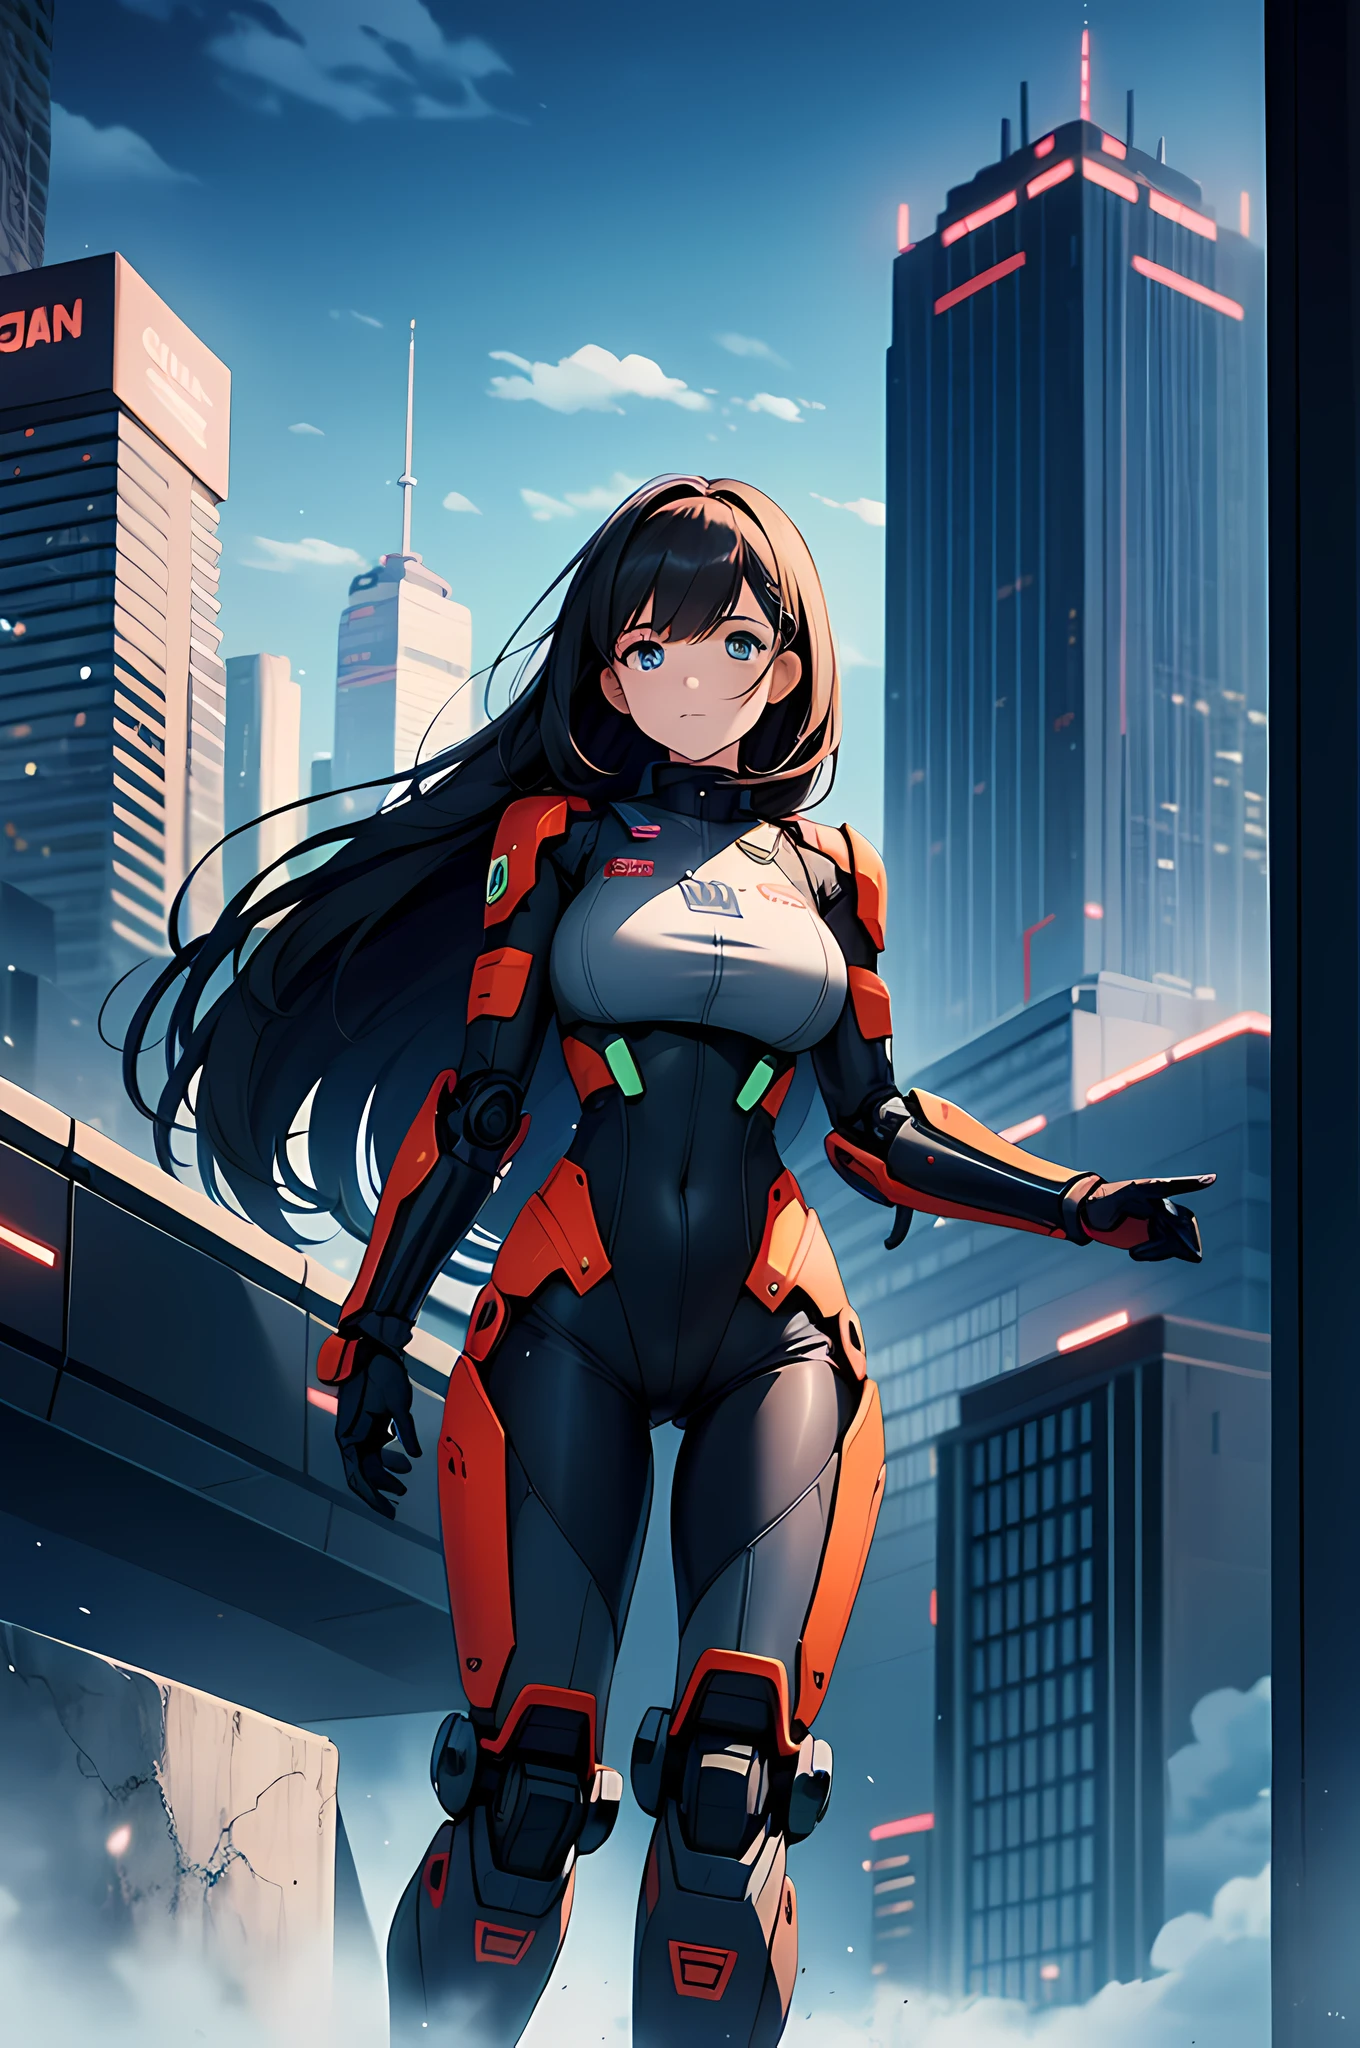 メカスーツを着た女の子, 巨大なロボットアーム, 都市の背景